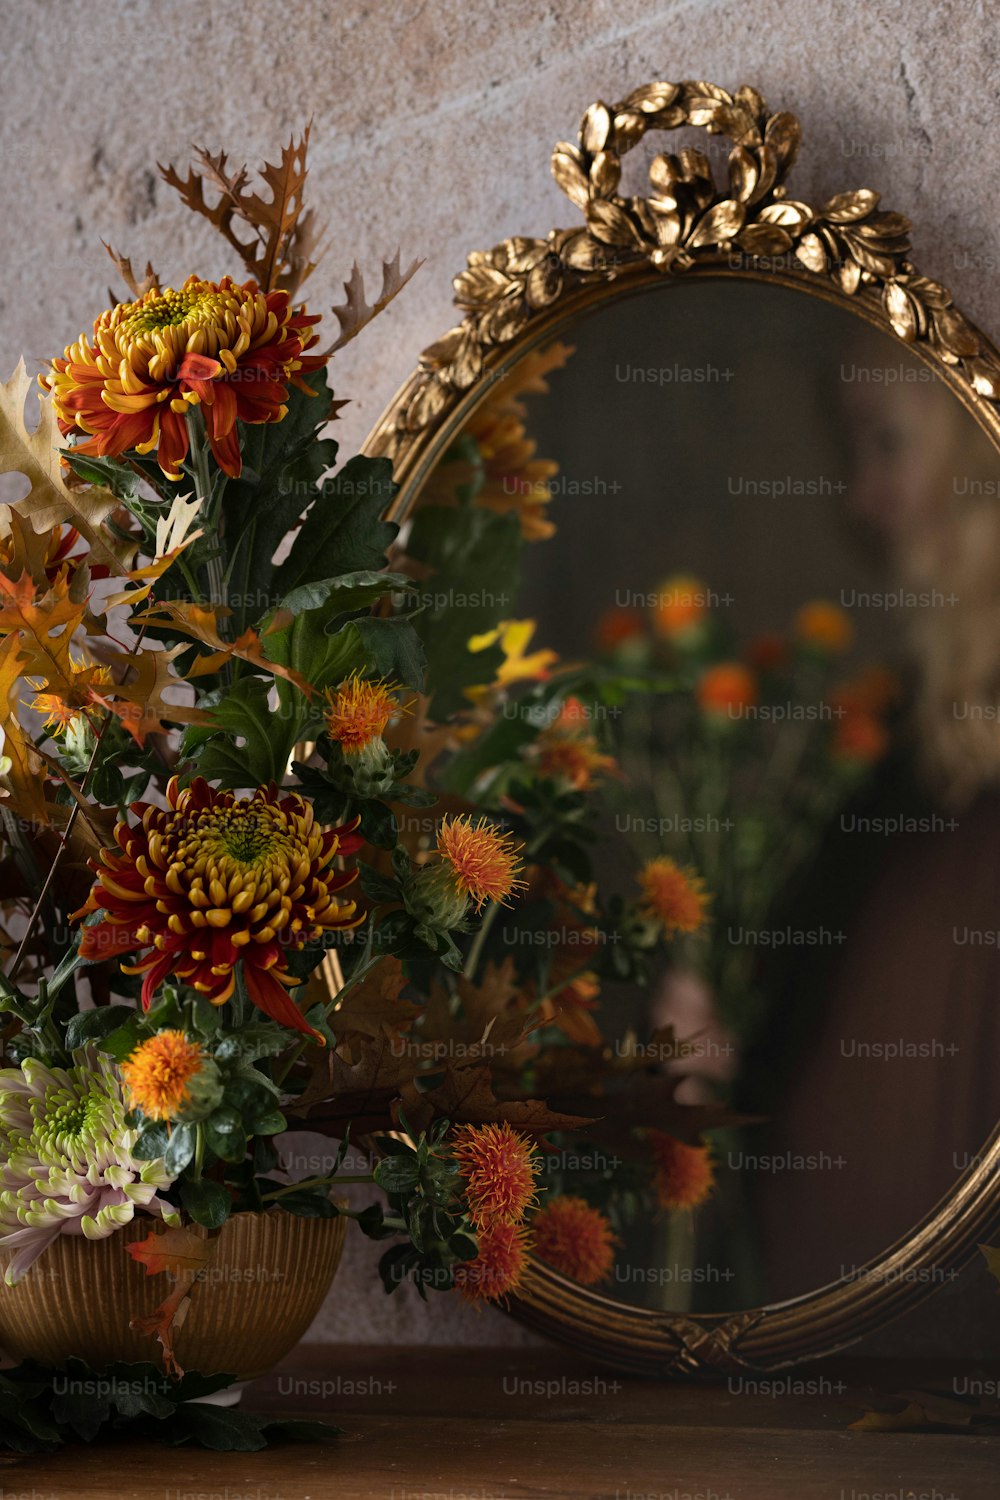 꽃으로 가득 찬 꽃병 옆 탁자 위에 놓인 거울